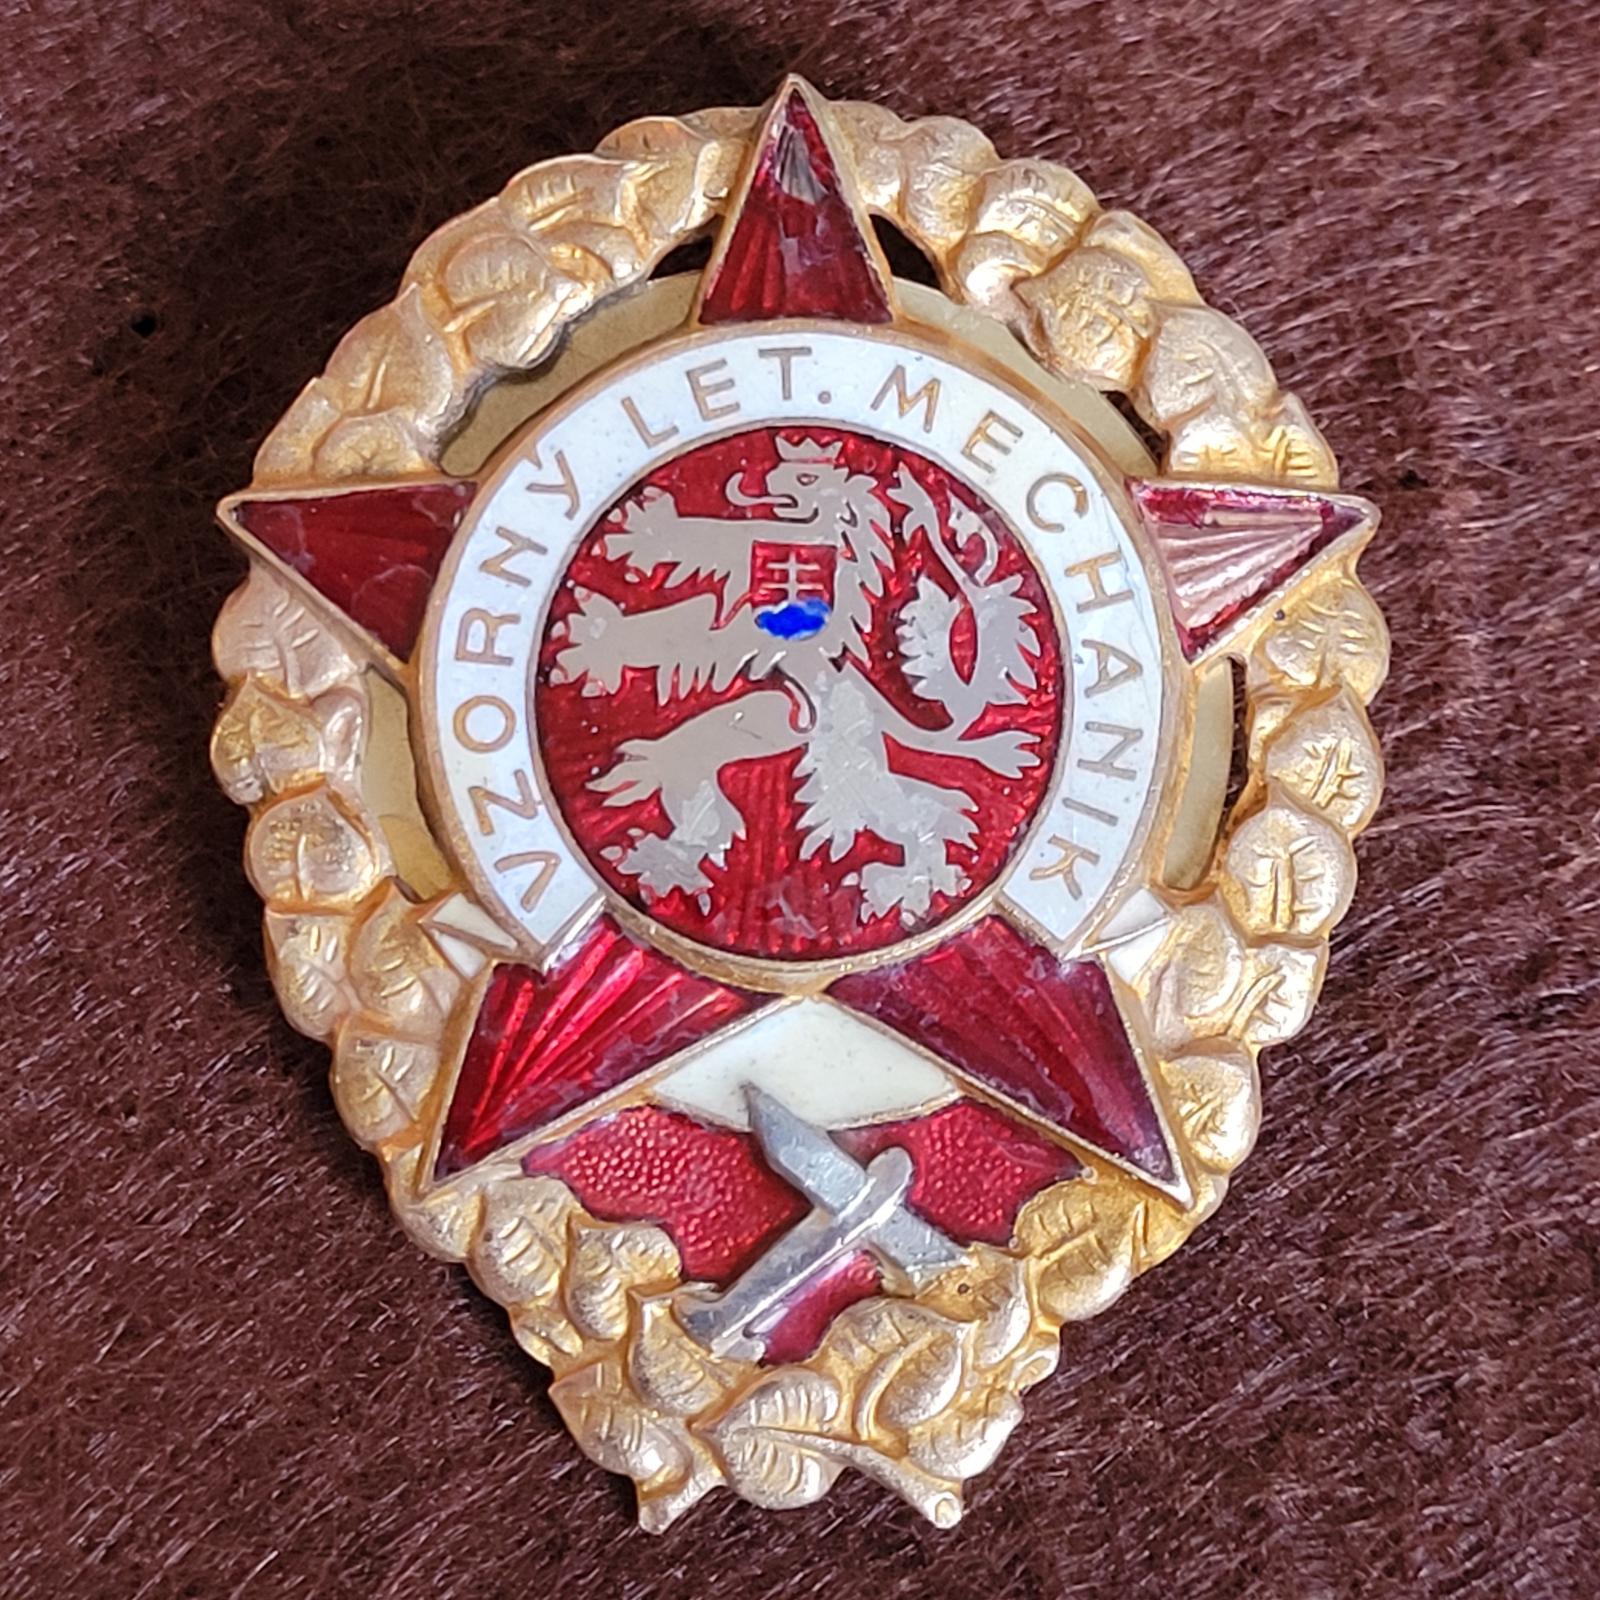 VZORNÝ LETECKÝ MECHANIK Č. 4293 - Odznaky, nášivky a medaily